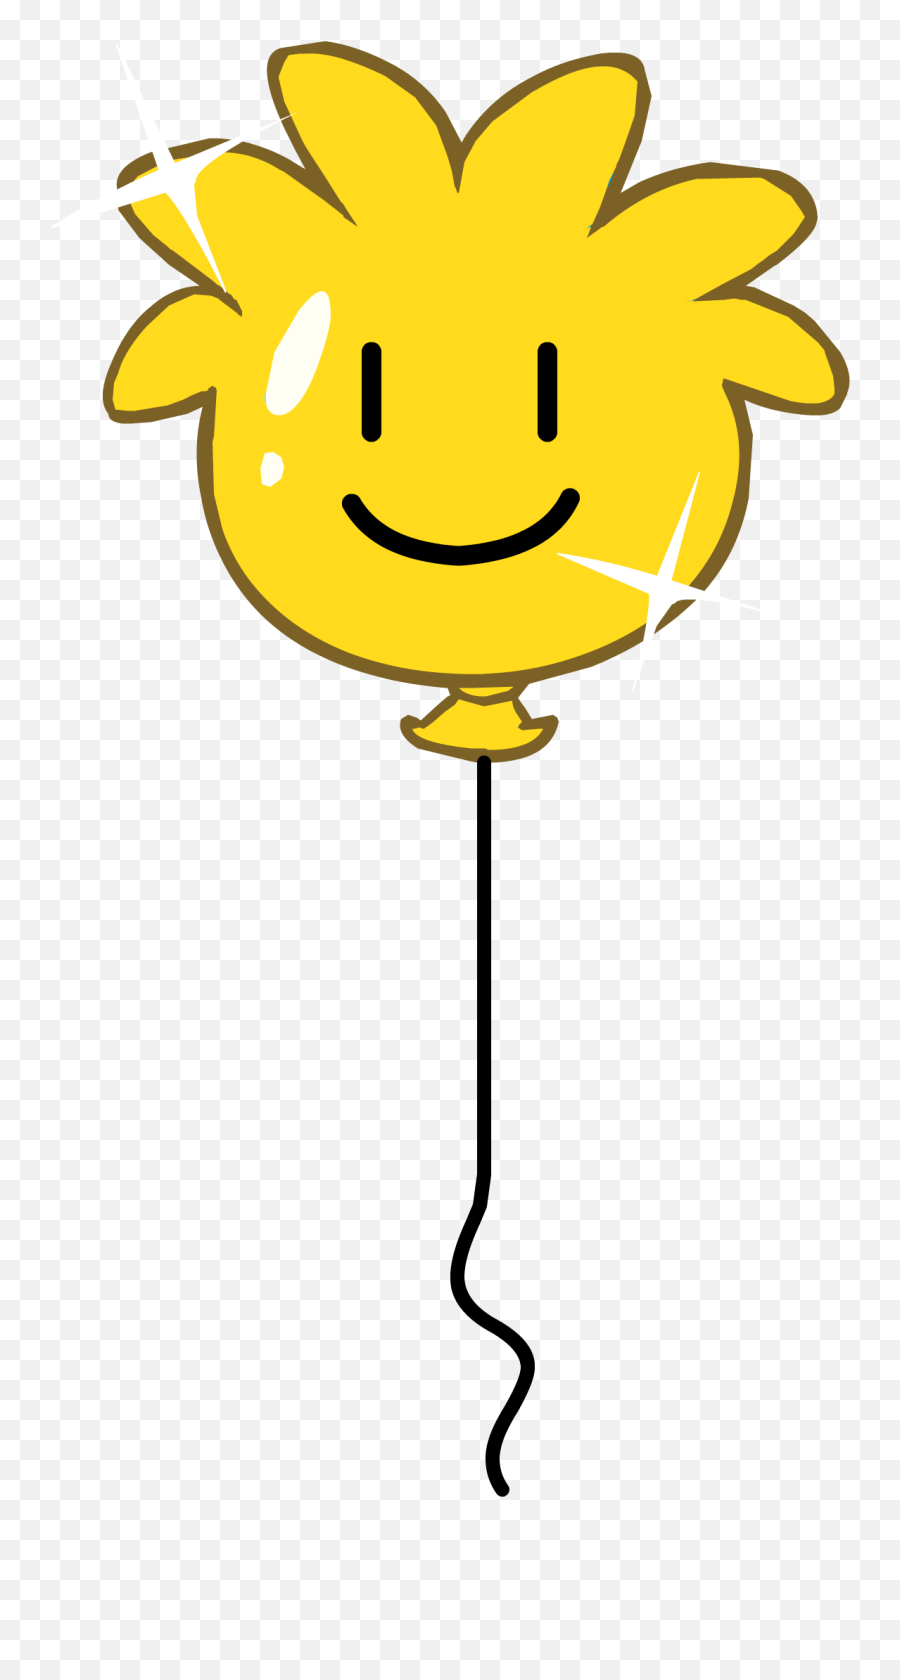 Smiley Clipart Balloon Smiley Balloon Transparent Free For - Club Penguin Puffle Balloon Emoji,Balloon Emoticon